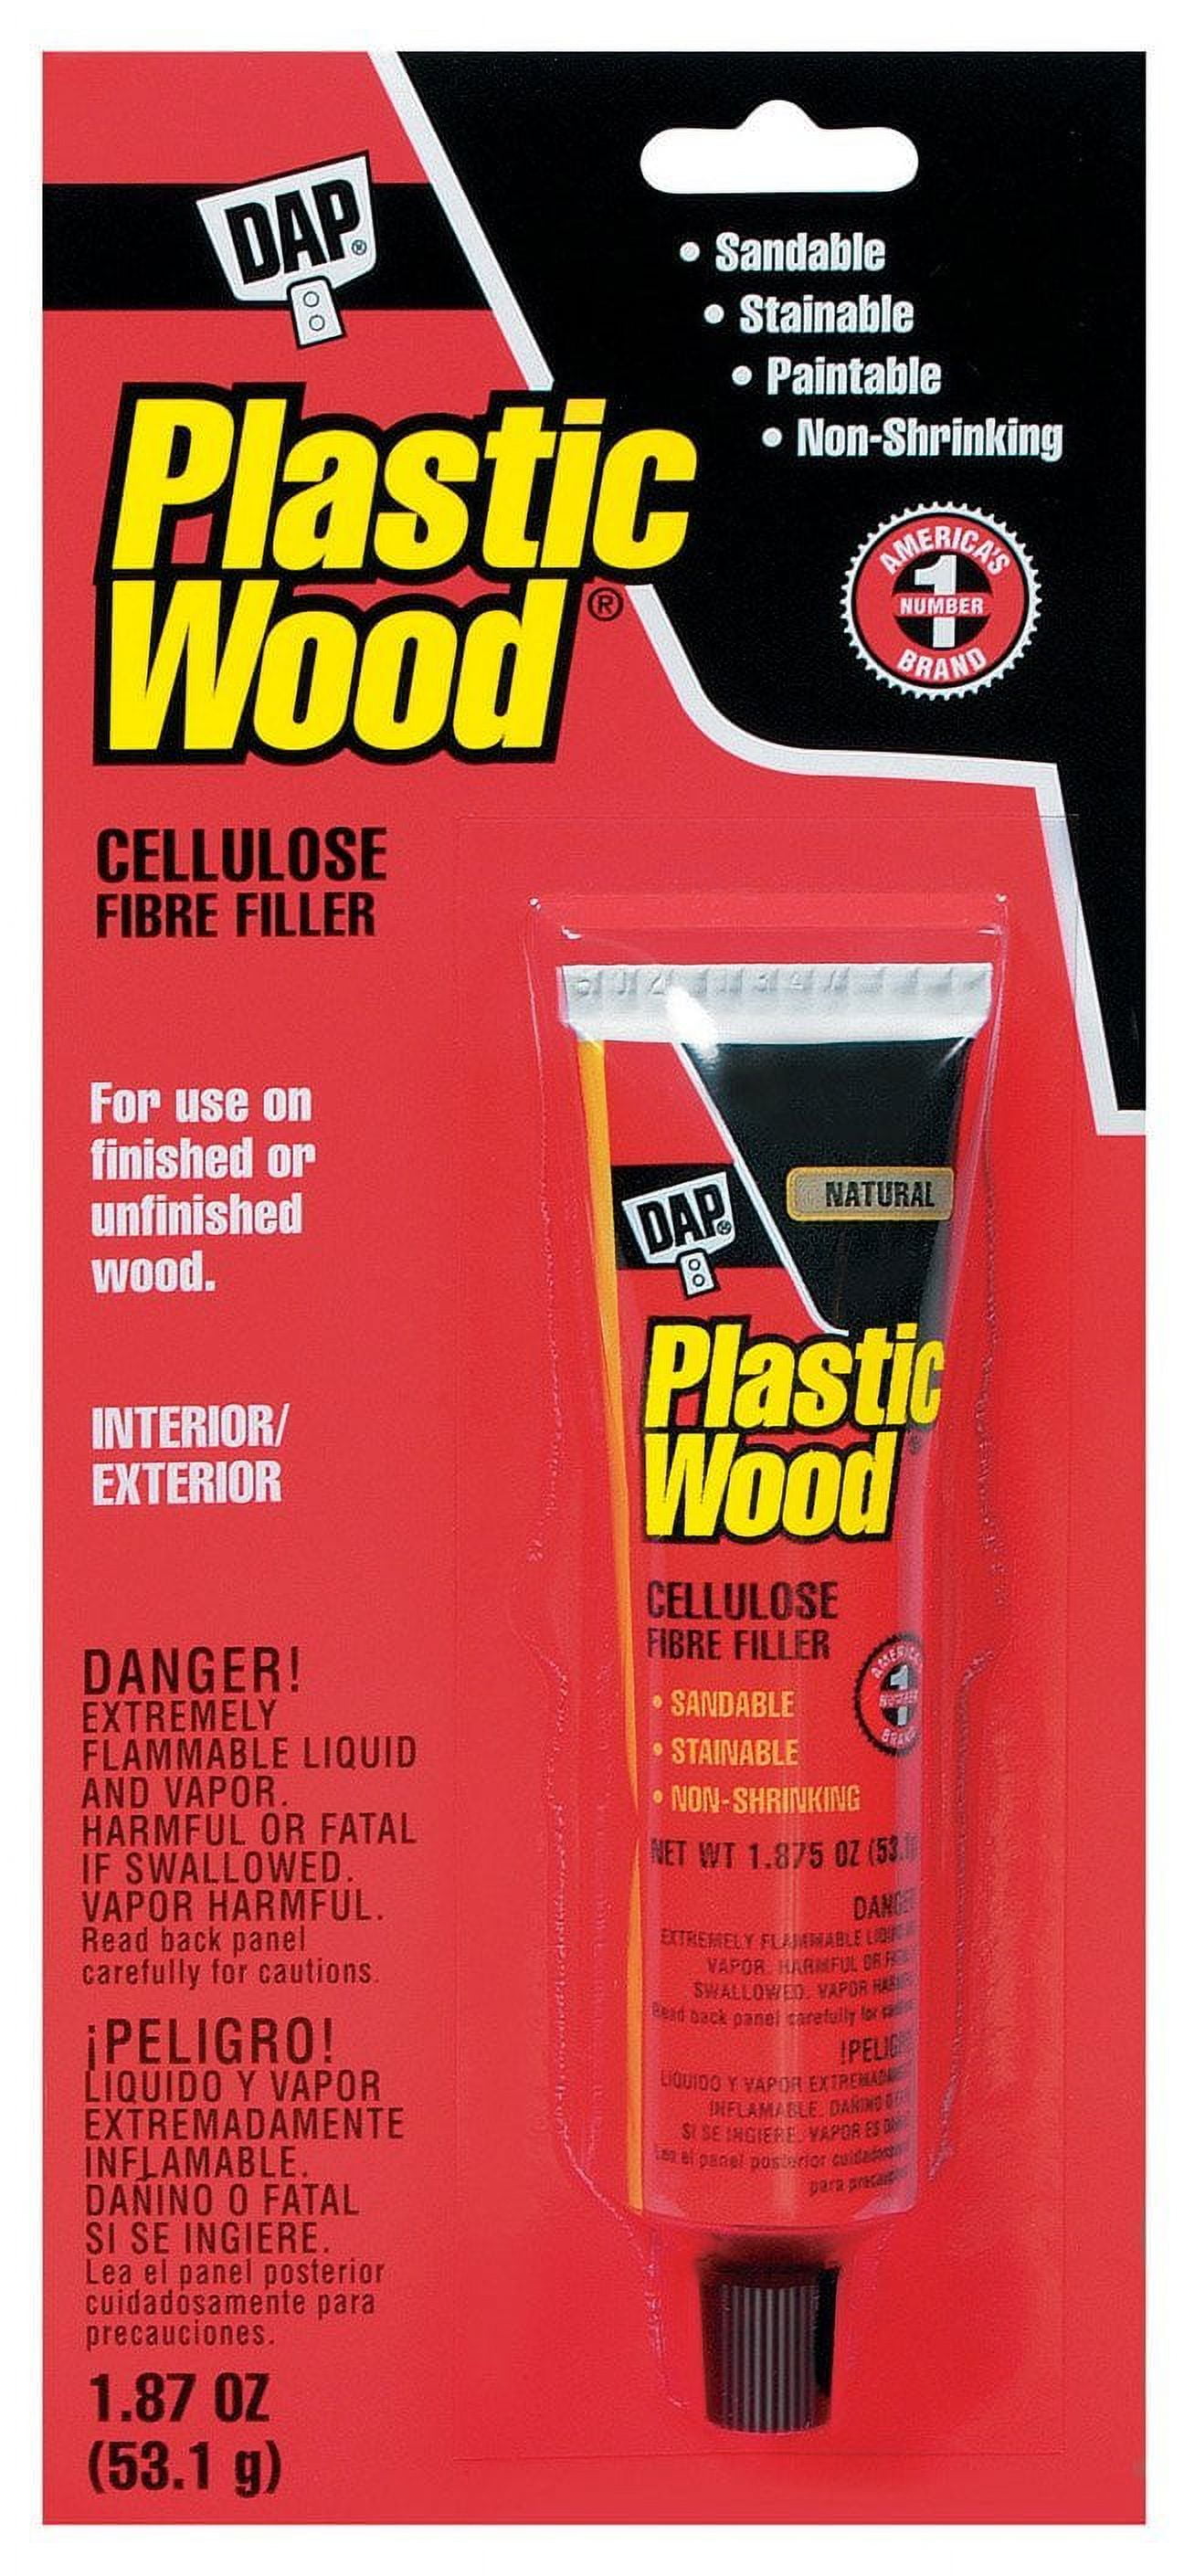 Dap Plastic Wood Professional Wood Filler Natural - image 1 of 2